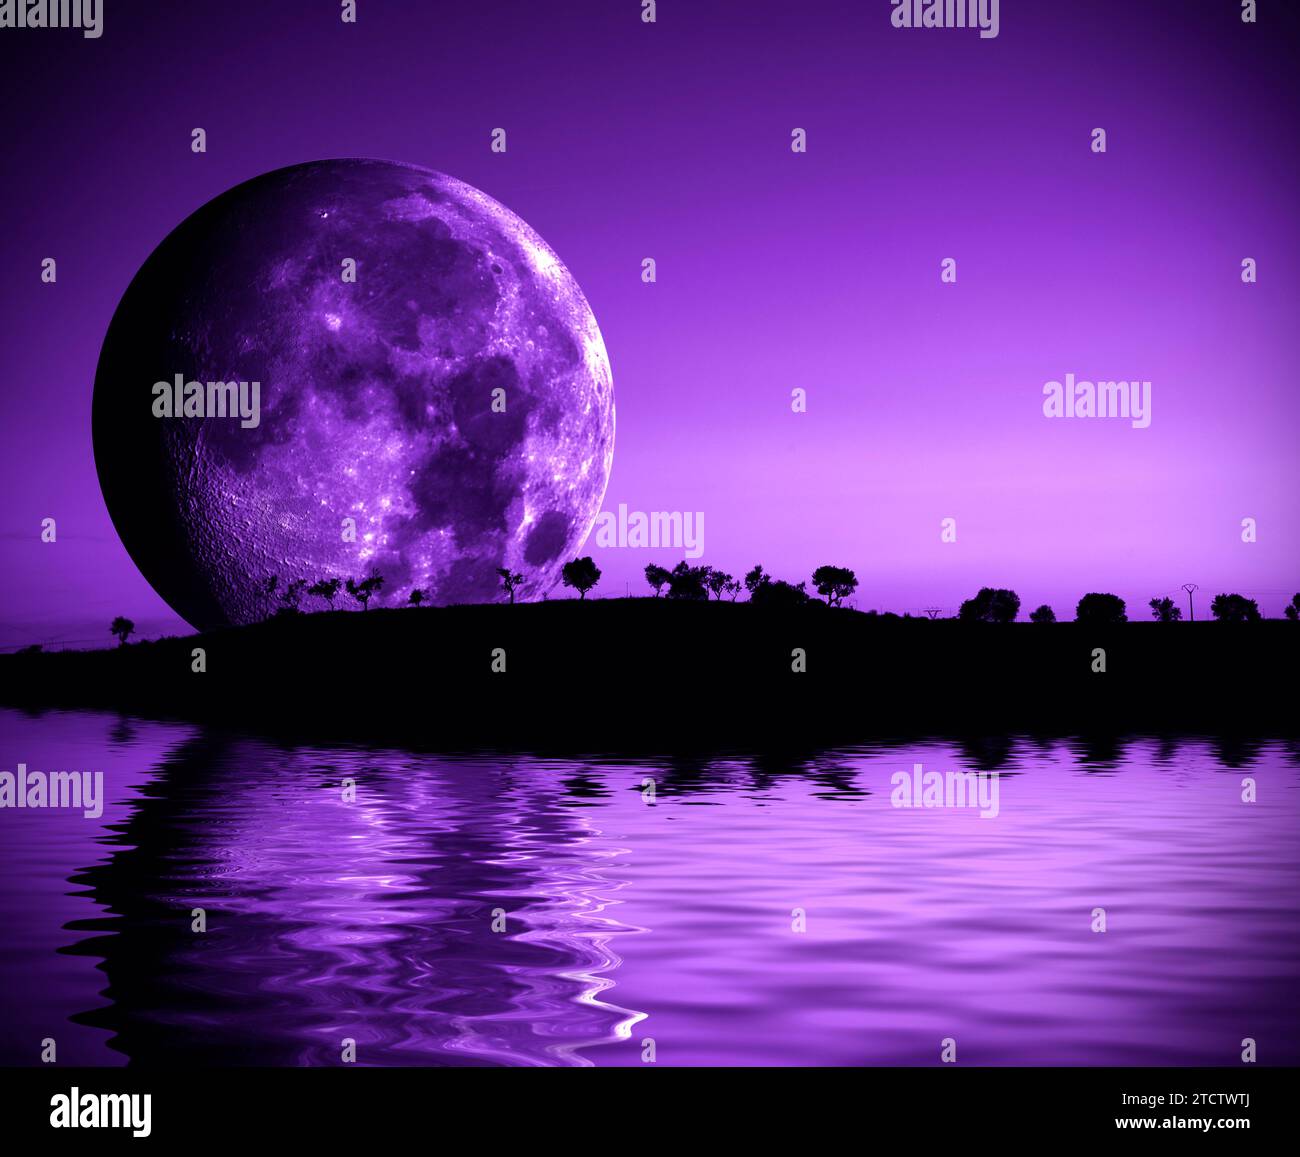 Geheimnisvolle Landschaft mit Vollmond und Bergen über dem See in violettem Ton. Stockfoto